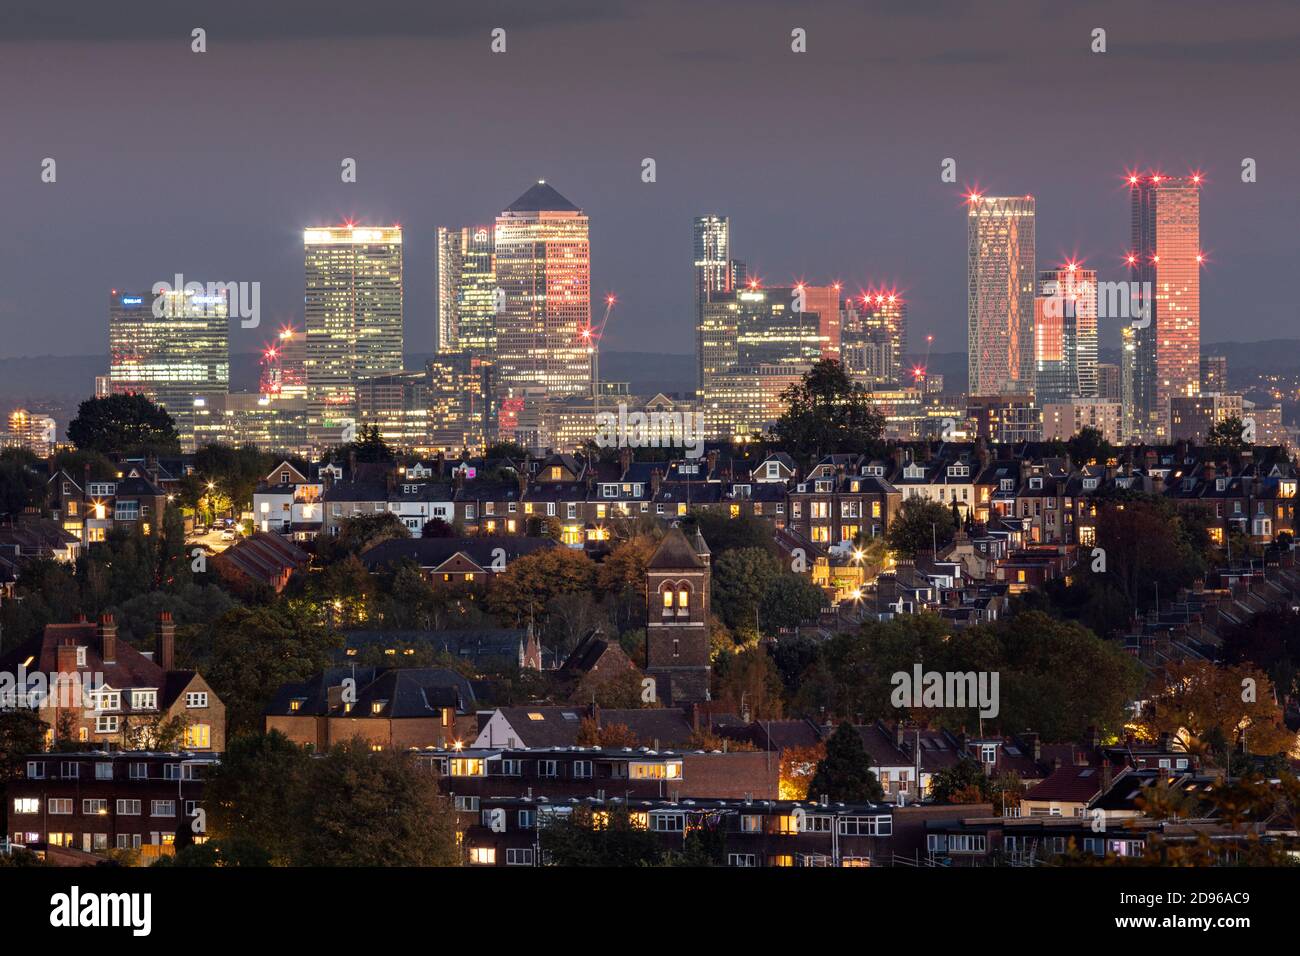 Royaume-Uni, Angleterre, Londres, vue sur les gratte-ciel depuis Muswell Hill du centre-ville de Londres avec des logements de banlieue à Crouch End et le quartier des affaires de Canary Wharf à Docklands, au crépuscule Banque D'Images